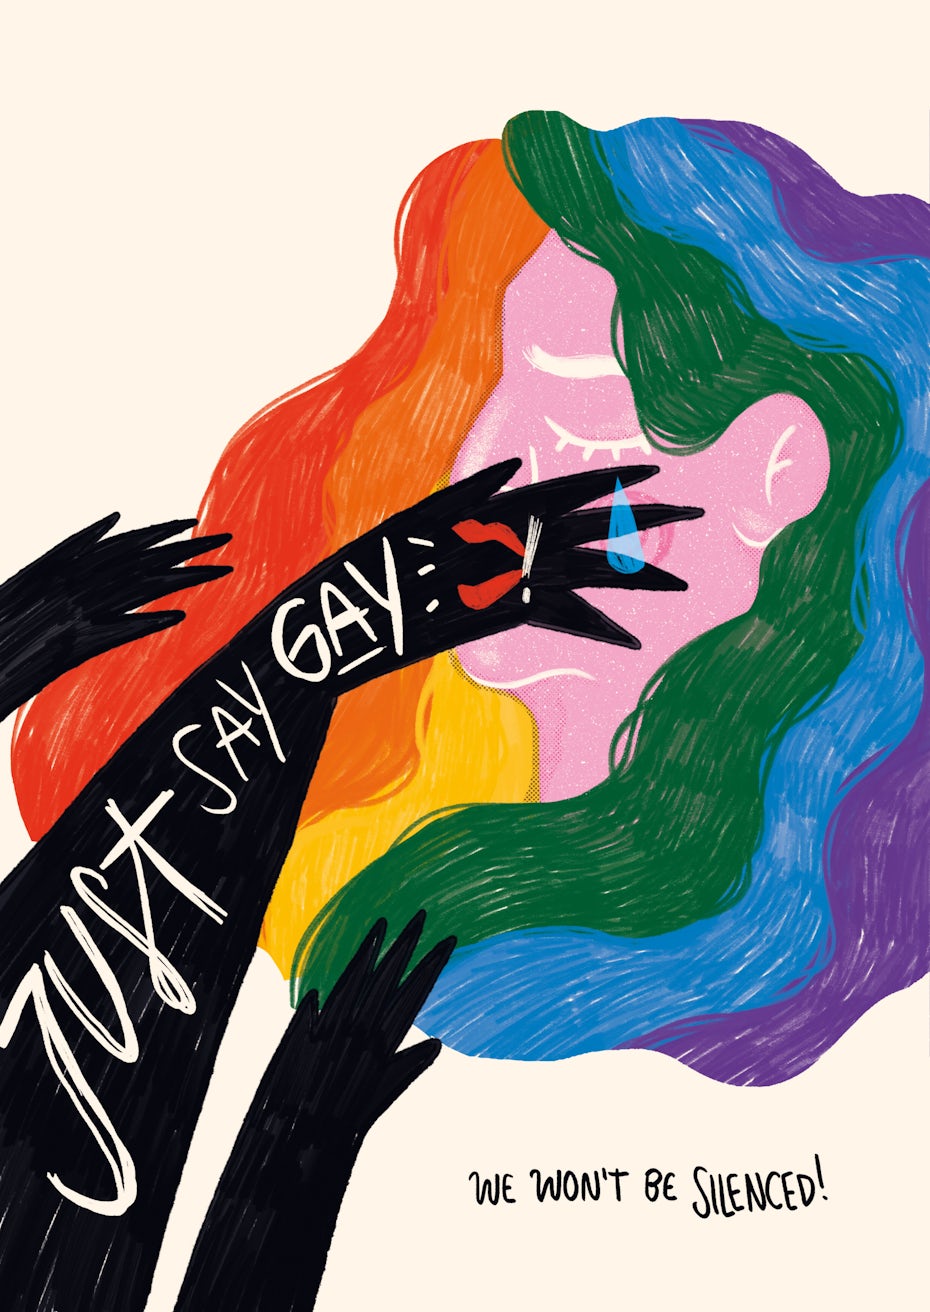 Affiche aux couleurs de l'arc-en-ciel pour les droits LGBTQA+